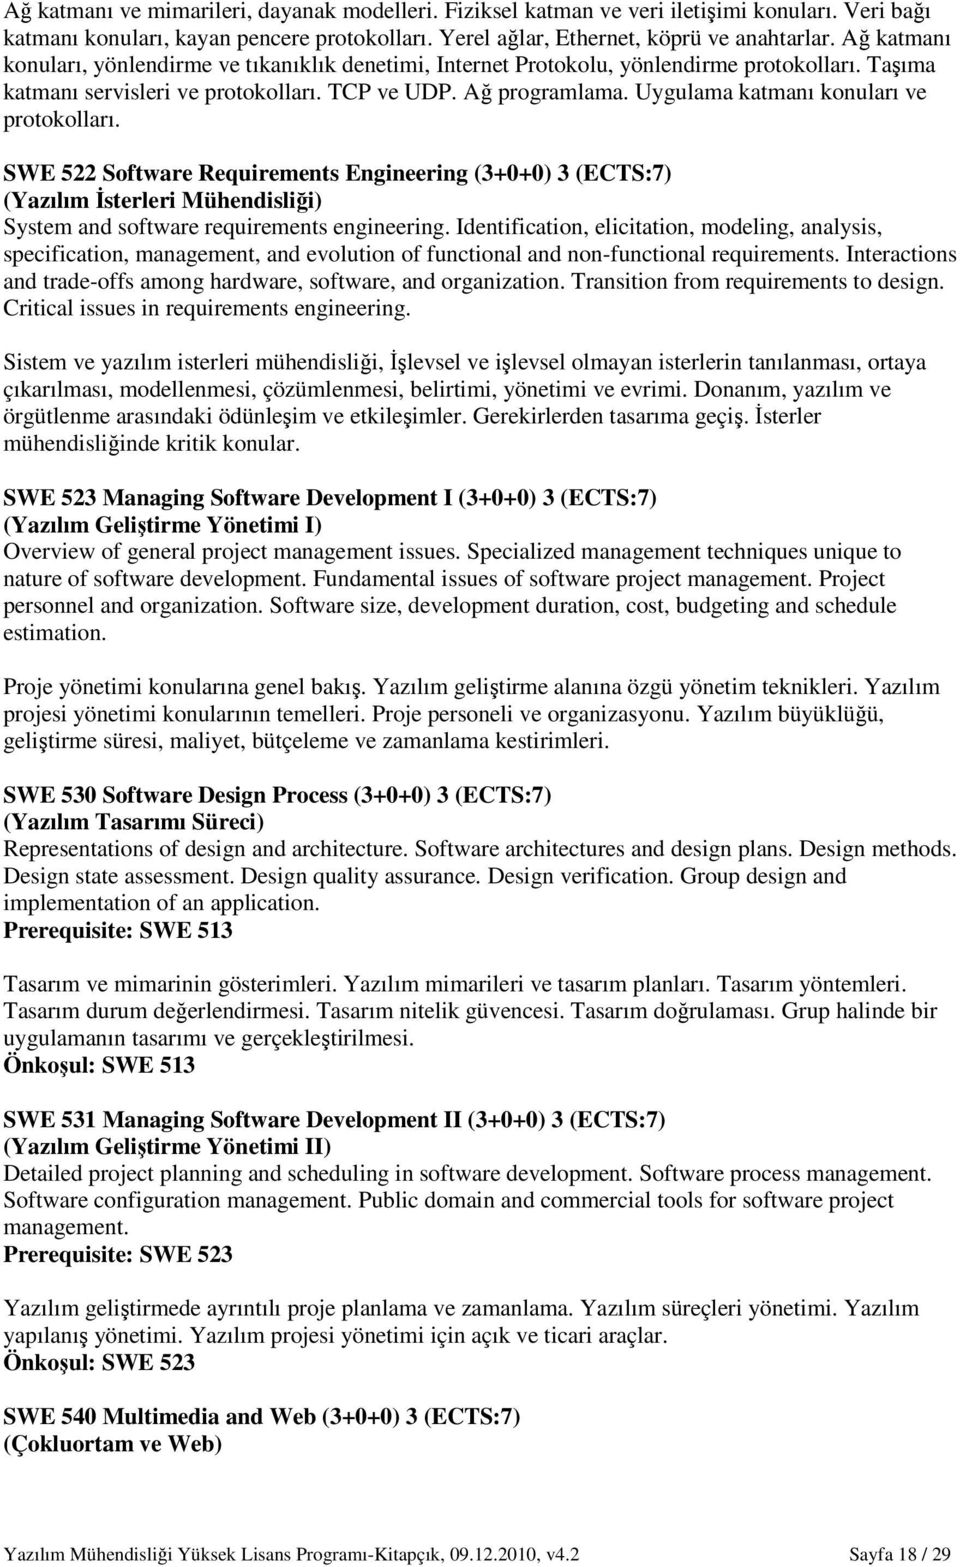 Uygulama katmanı konuları ve protokolları. SWE 522 Software Requirements Engineering (3+0+0) 3 (ECTS:7) (Yazılım Đsterleri Mühendisliği) System and software requirements engineering.